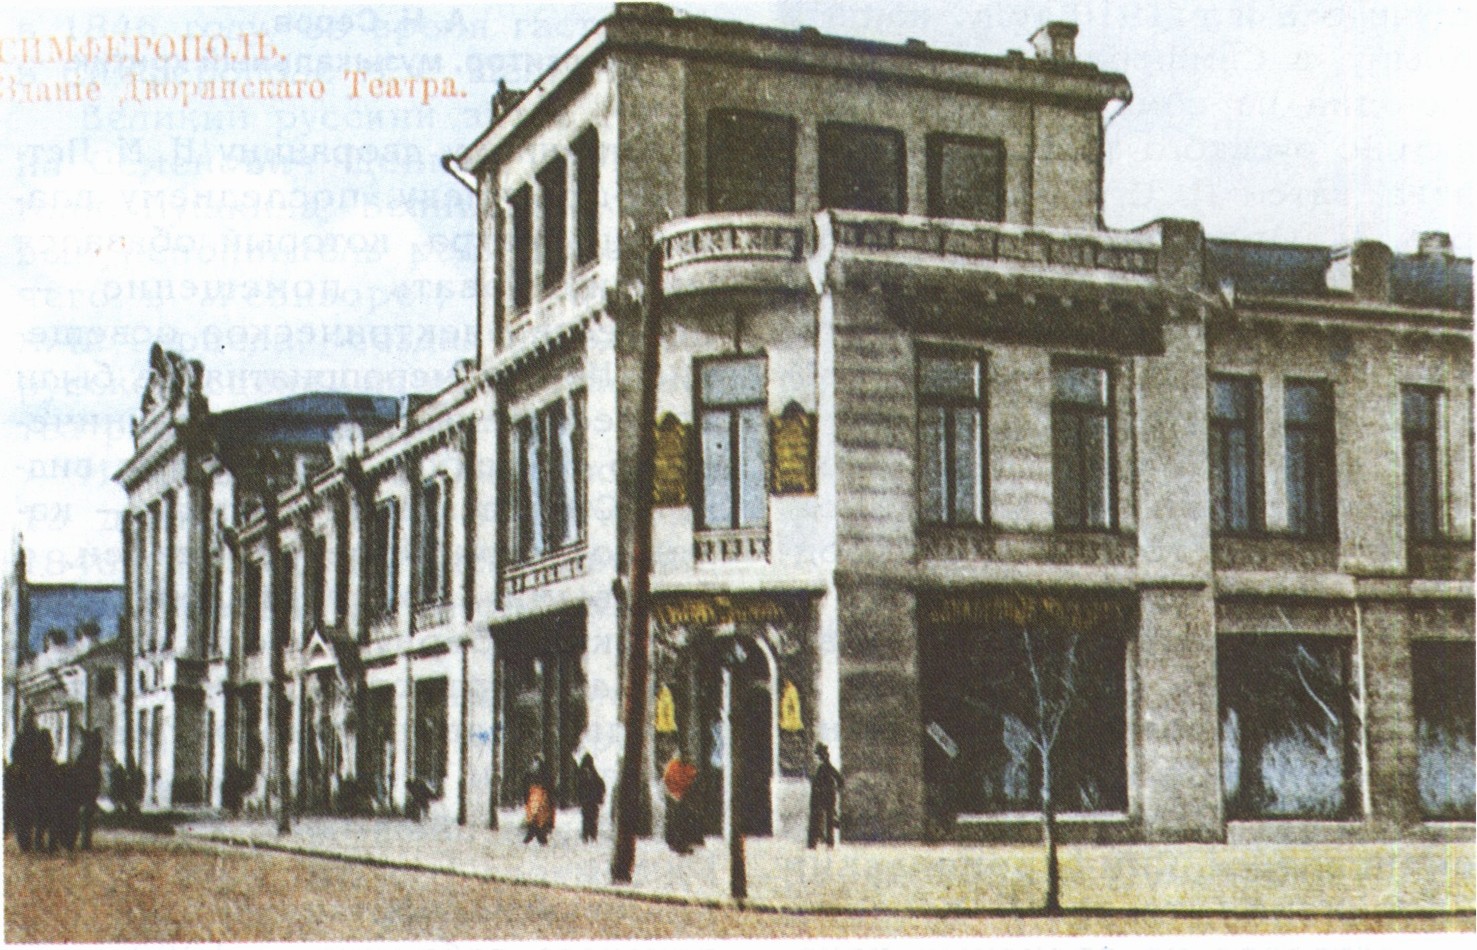 Здание Дворянского театра. Фото начала XX века